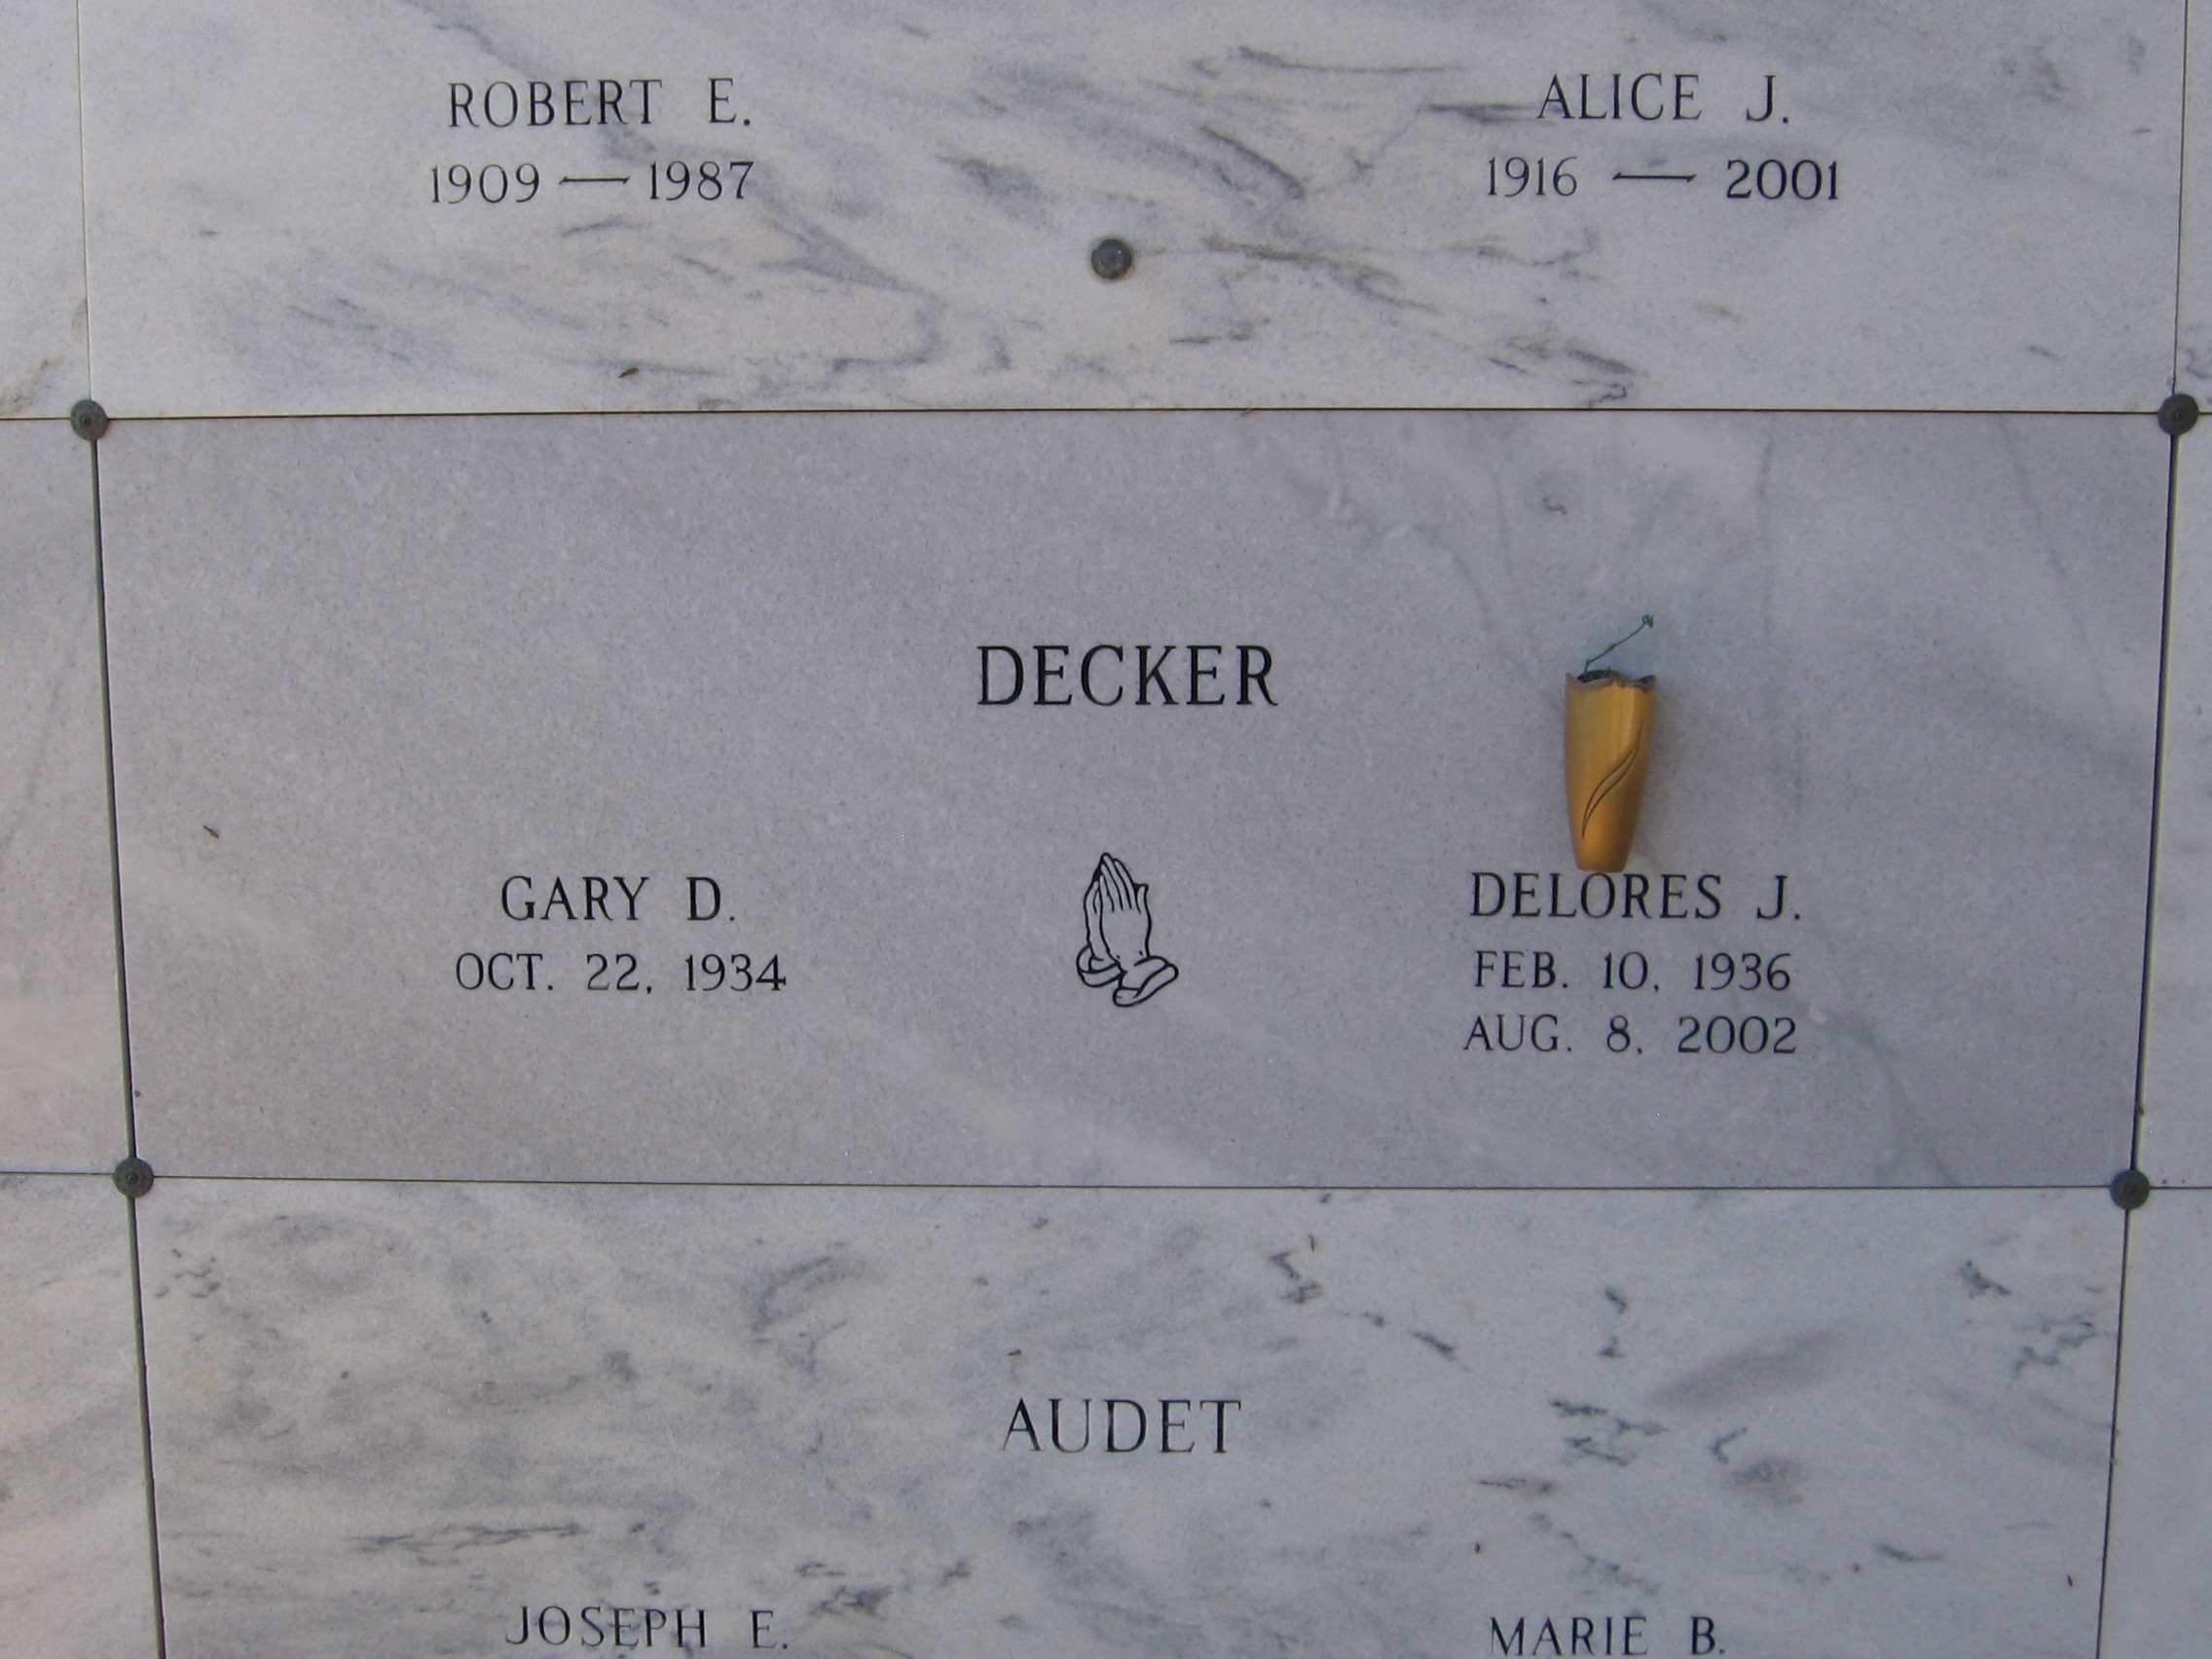 Gary D Decker